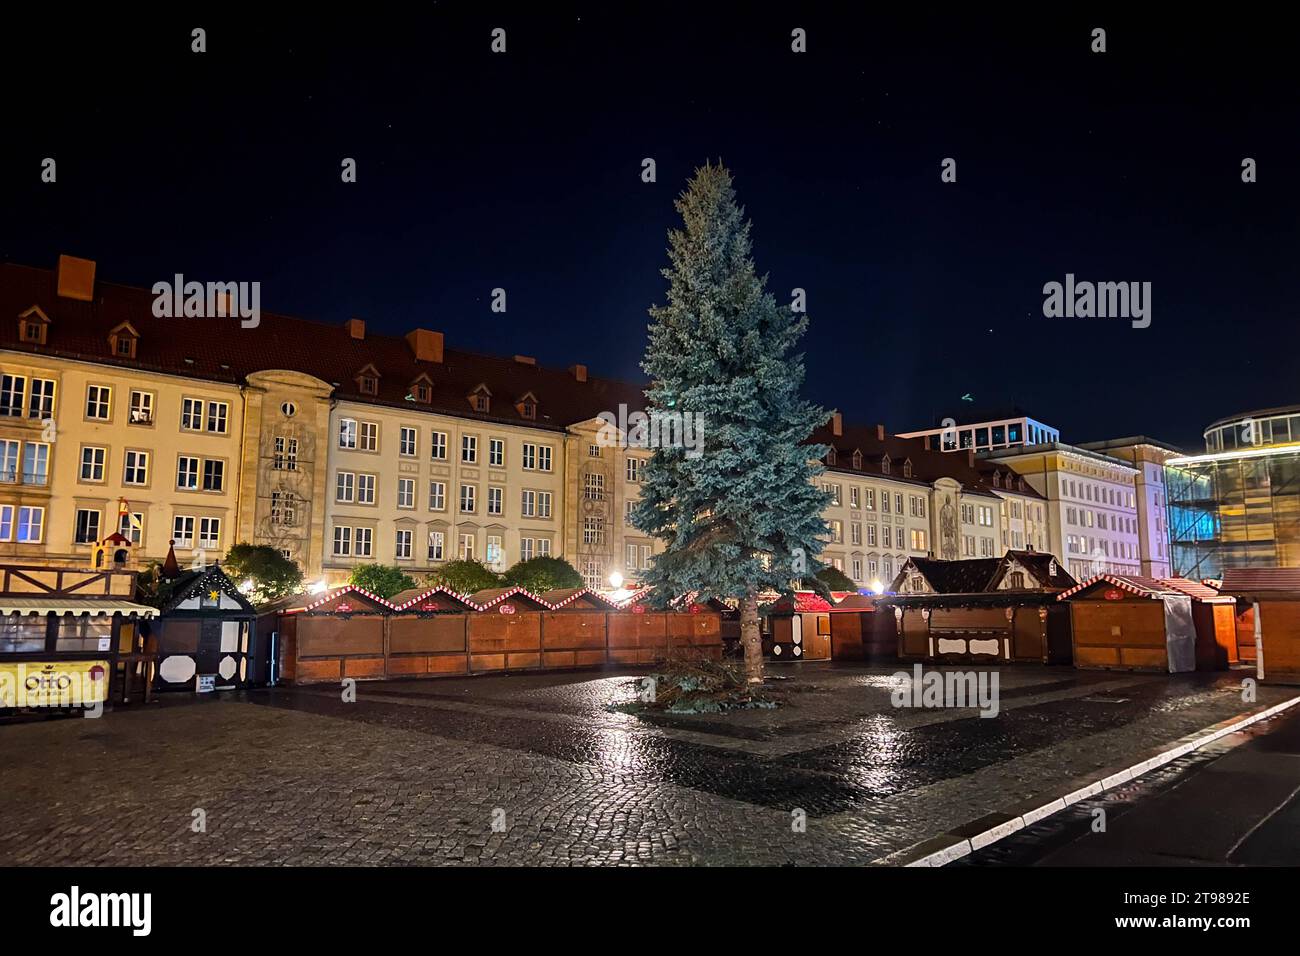 Weihnachtsbaum für den diesjährigen Weihnachtsmarkt steht jetzt auf dem Alten Markt vor dem Rathaus. Weihnachtsbaum für Magdeburger Weihnachtsmarkt gefällt. Für jedes ihrer drei Kinder wurde bei Familie Parnitzke aus Magdeburg ein Baum gepflanzt. Doch nachdem sich das Wurzelwerk einer Fichte stark ausgeweitet hat, wechselt der Baum seinen Standort und schmückt in diesem Jahr den Magdeburger Weihnachtsmarkt. Am Montag wurde der 16 Meter hohe Baum im Stadtteil Hopfengarten gefällt. *** Christmas tree for this years Christmas market now stands on the Alter Markt in front of the town hall Christma Stock Photo